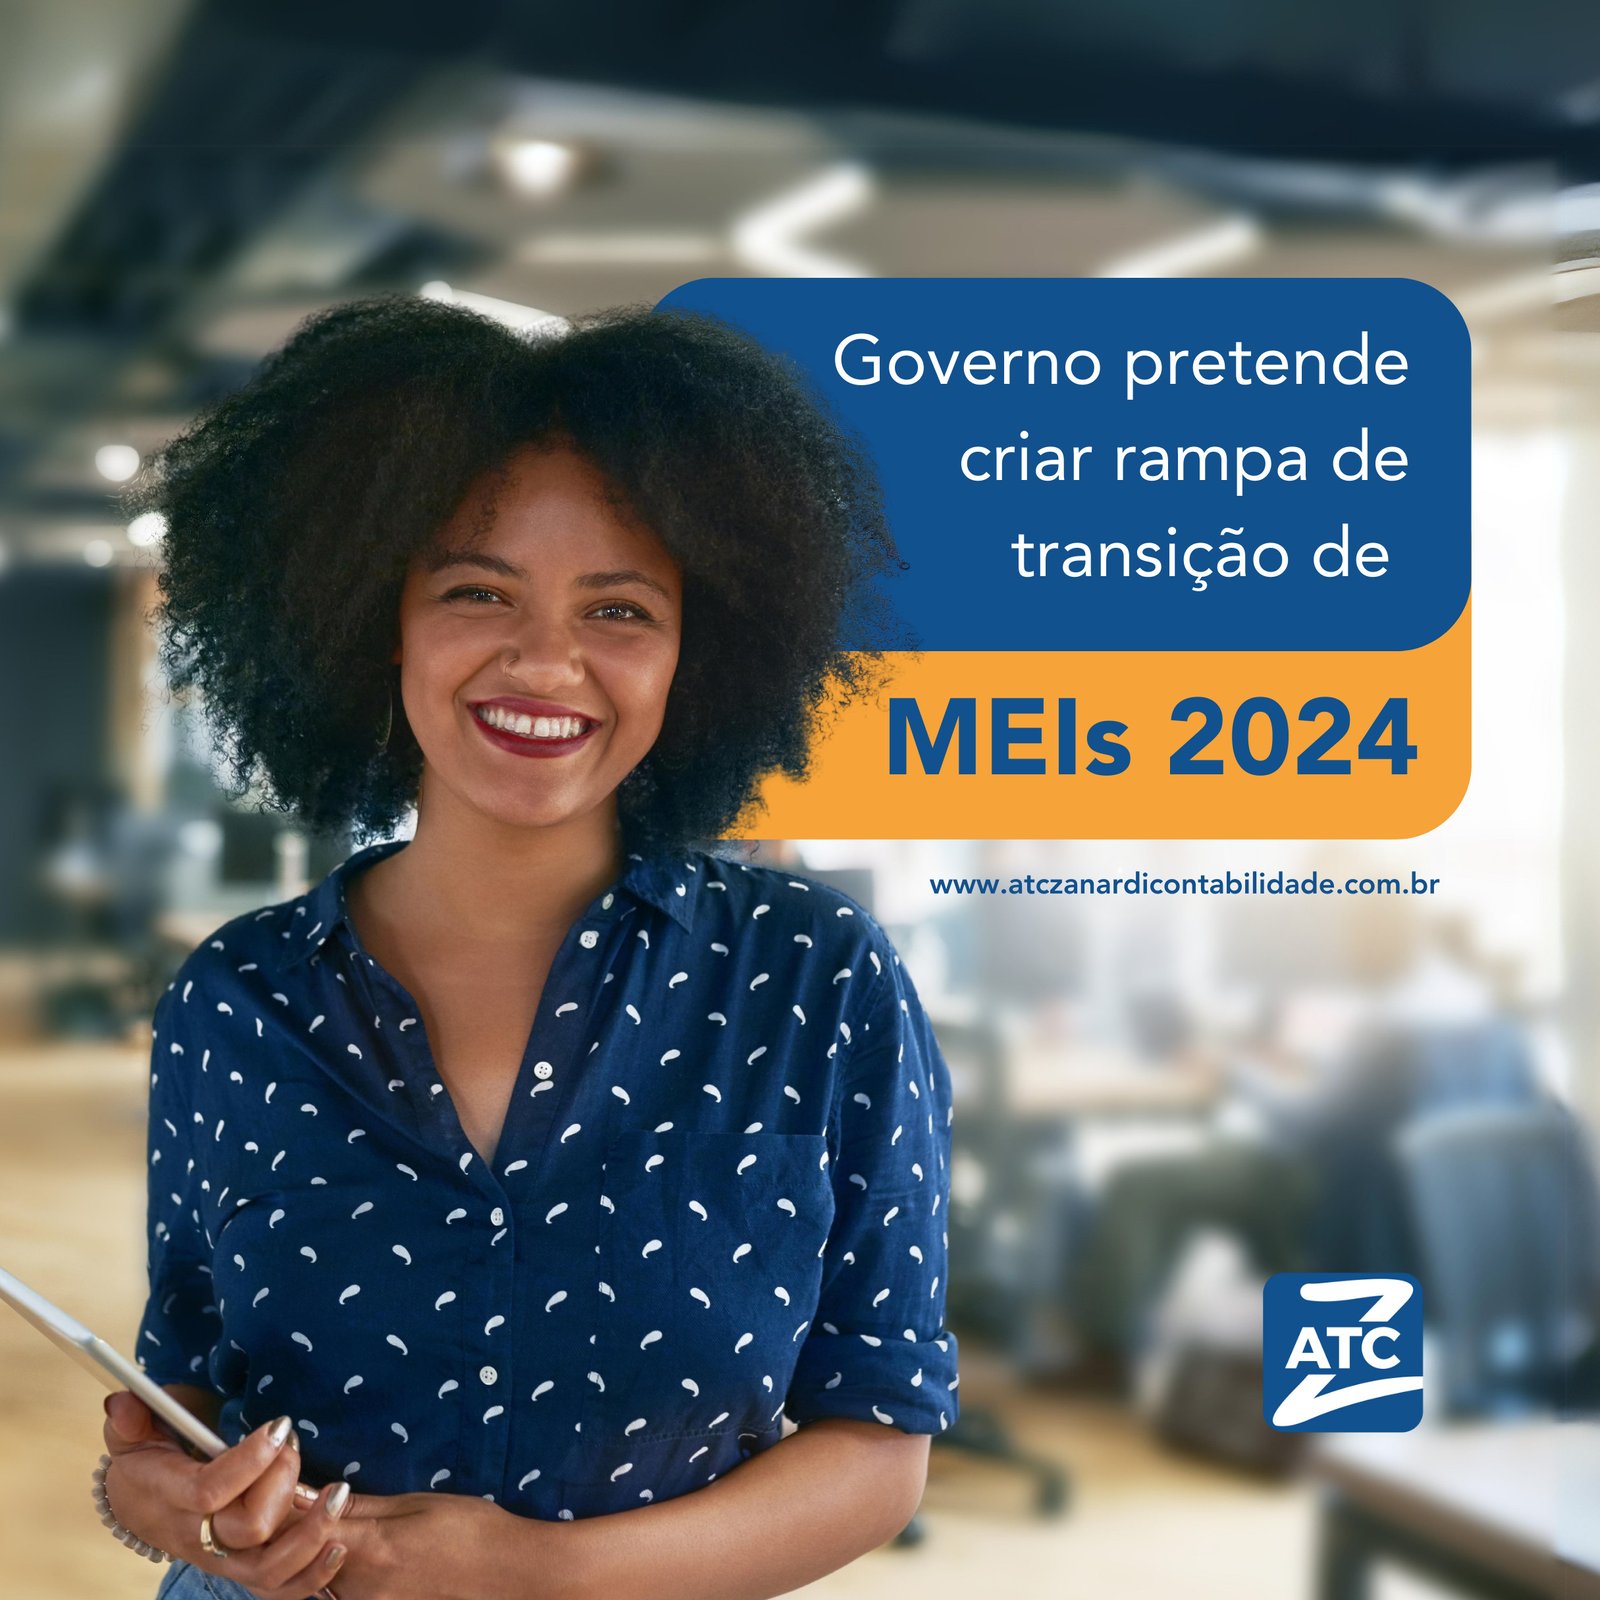 Governo pretende criar rampa de transição de MEIs 2024